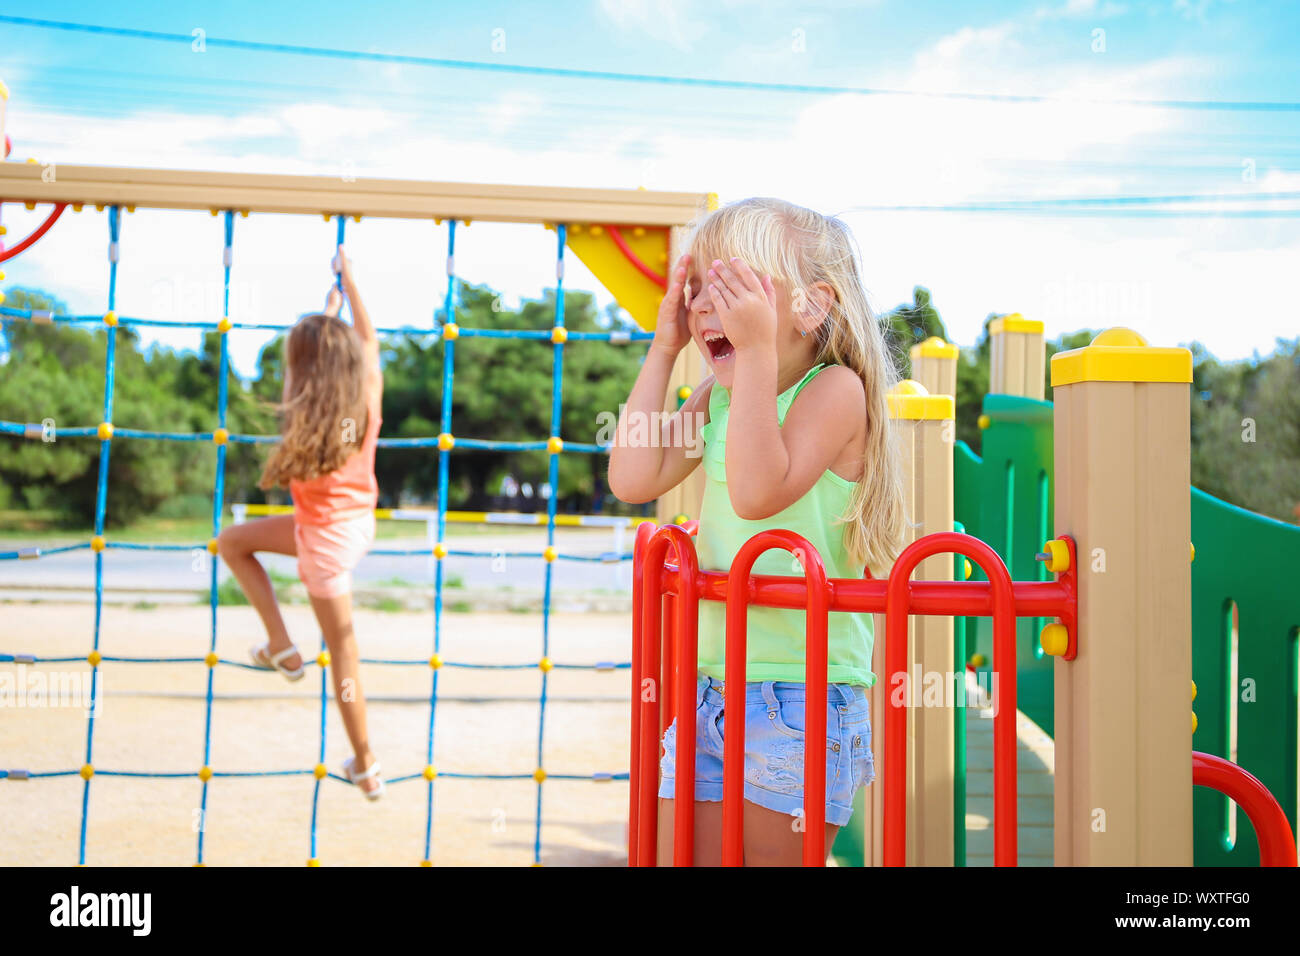 Des cris d'enfants dans une aire de jeux. Banque D'Images